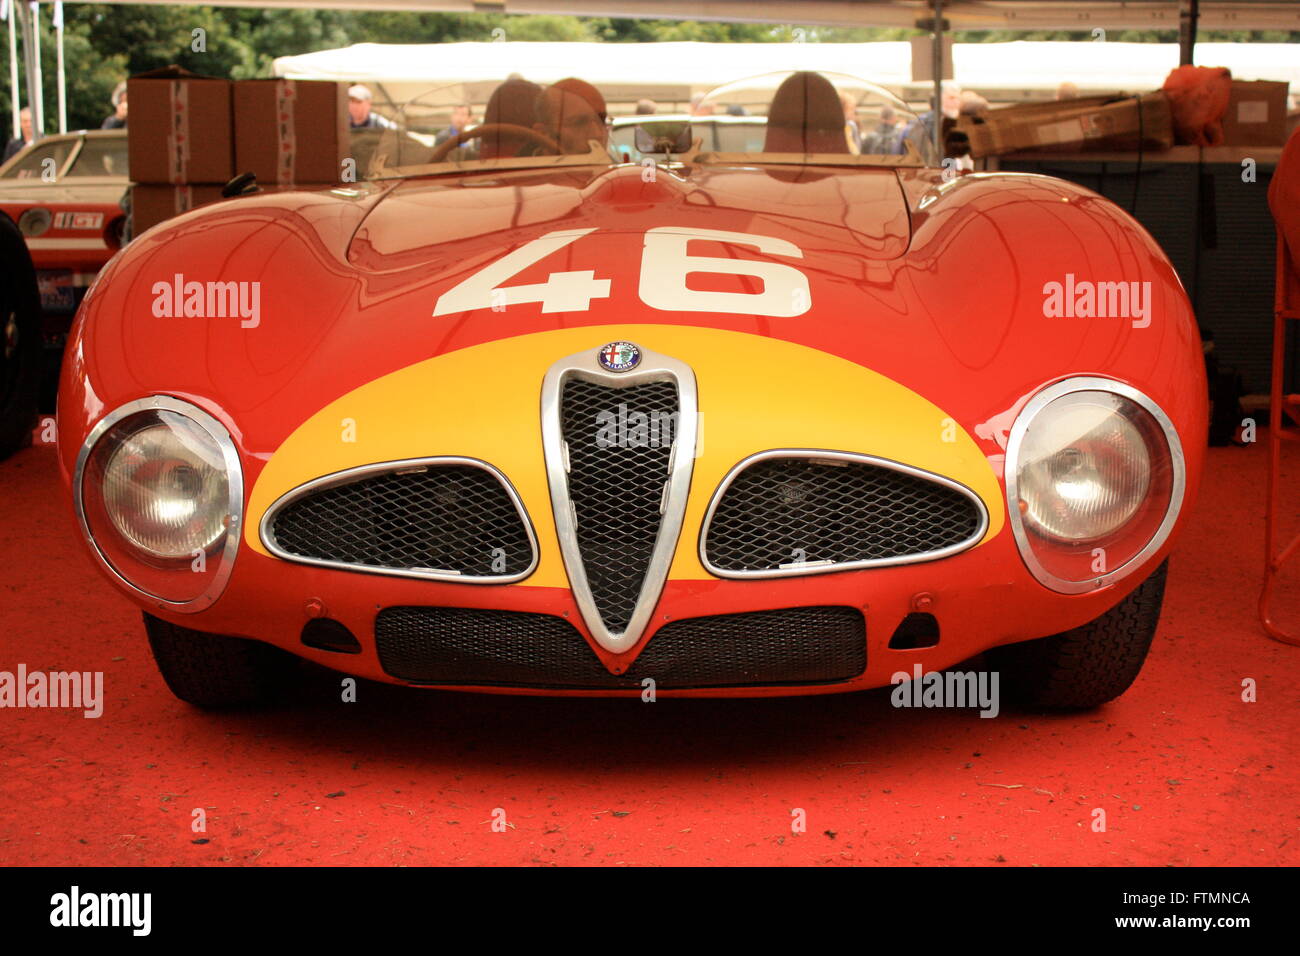 Alfa Romeo Coche deportivo en el Festival de Velocidad de Goodwood. Foto de stock